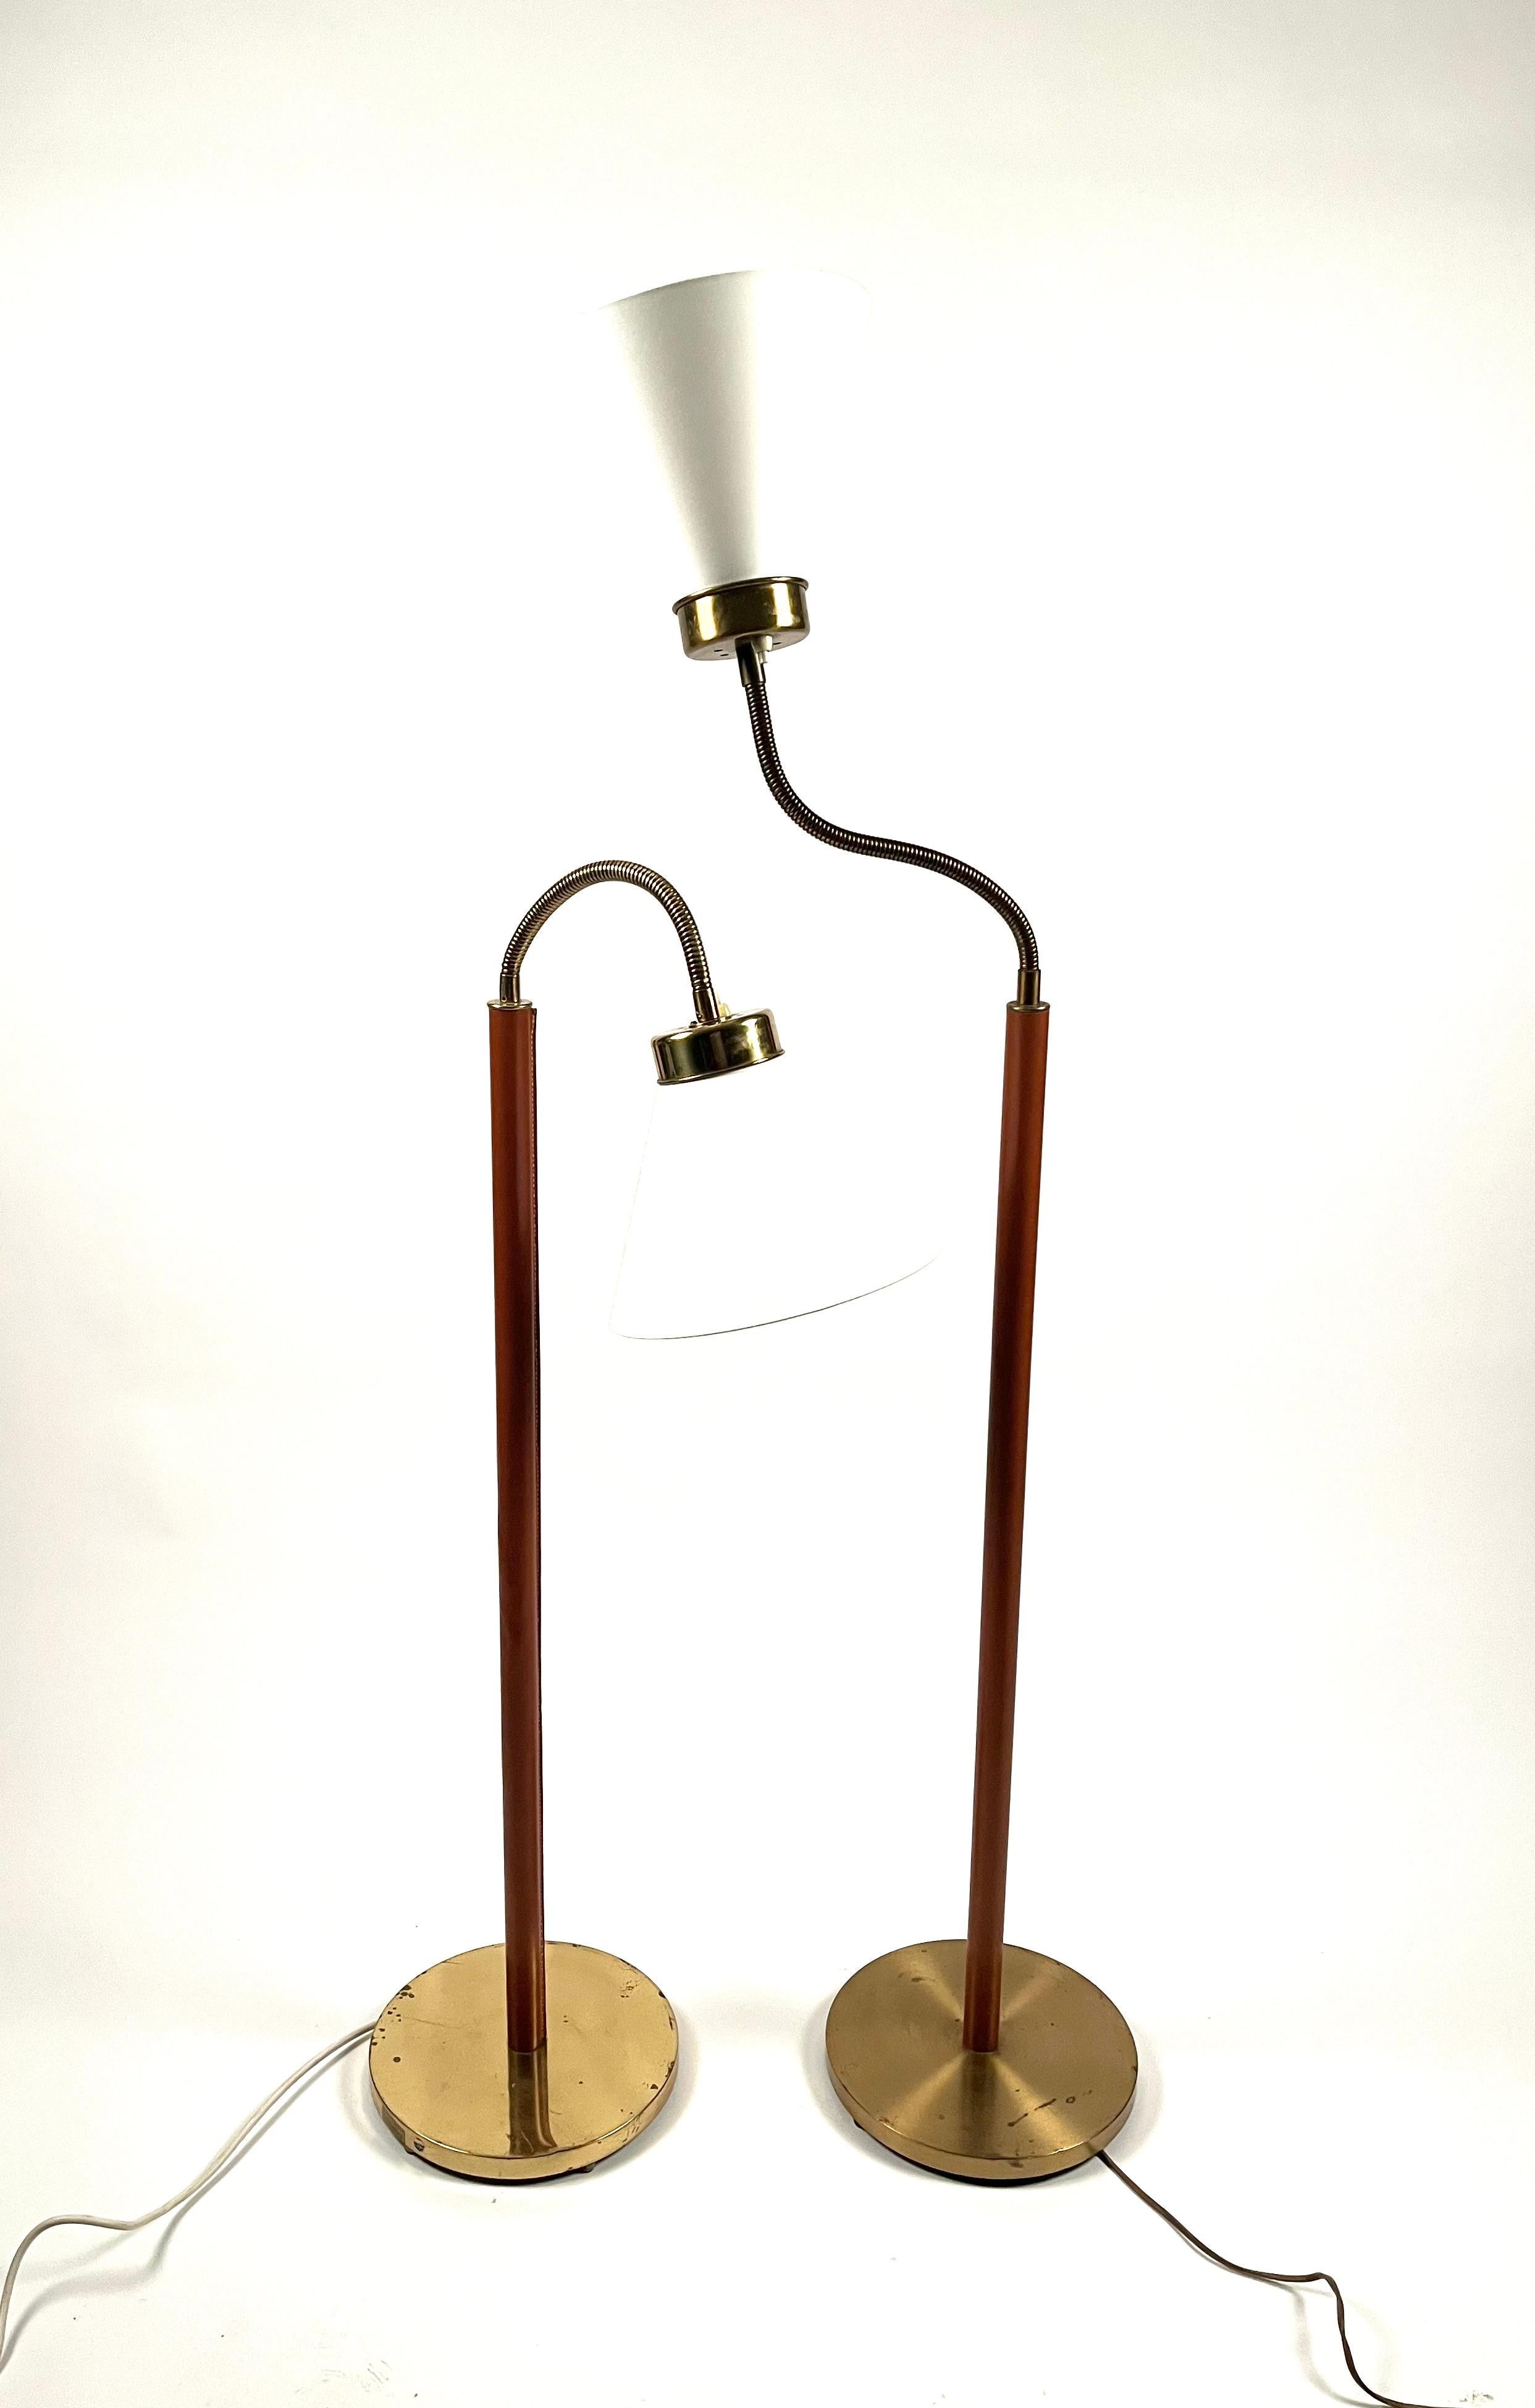 Deux lampadaires 1838 conçus par Josef Frank  1934 pour l'entreprise suédoise emblématique Firma Svenskt Tenn à Stockholm.
Cadre en laiton et cuir cognac.
Différentes hauteurs de lampes. L'un est plus long de 5 cm que l'autre.
Nouveaux abat-jour